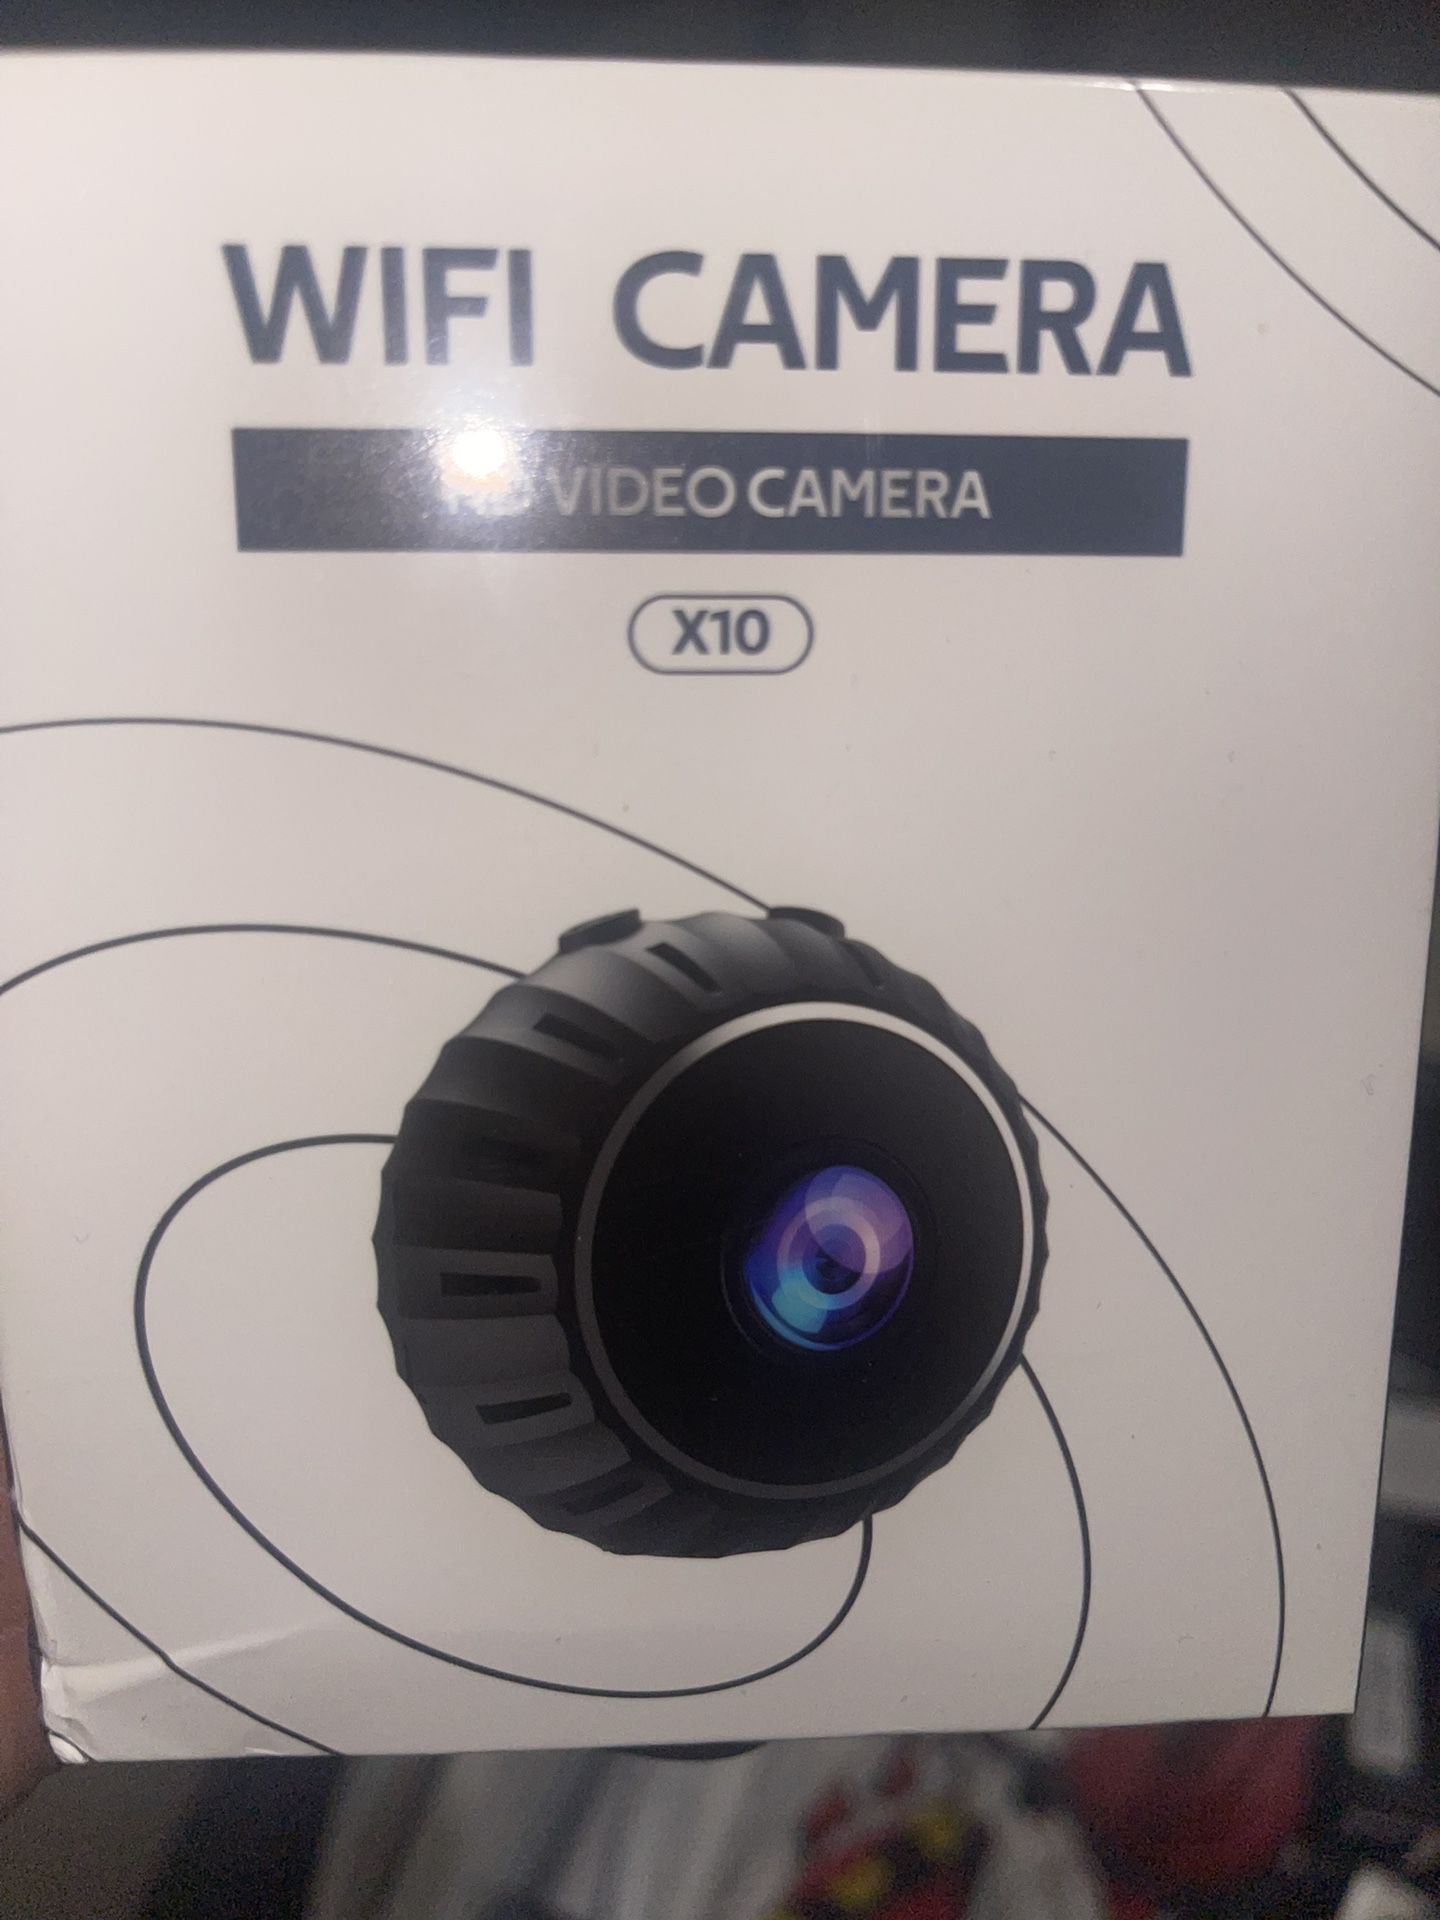 Wireless WiFi Mini Spy Camera 